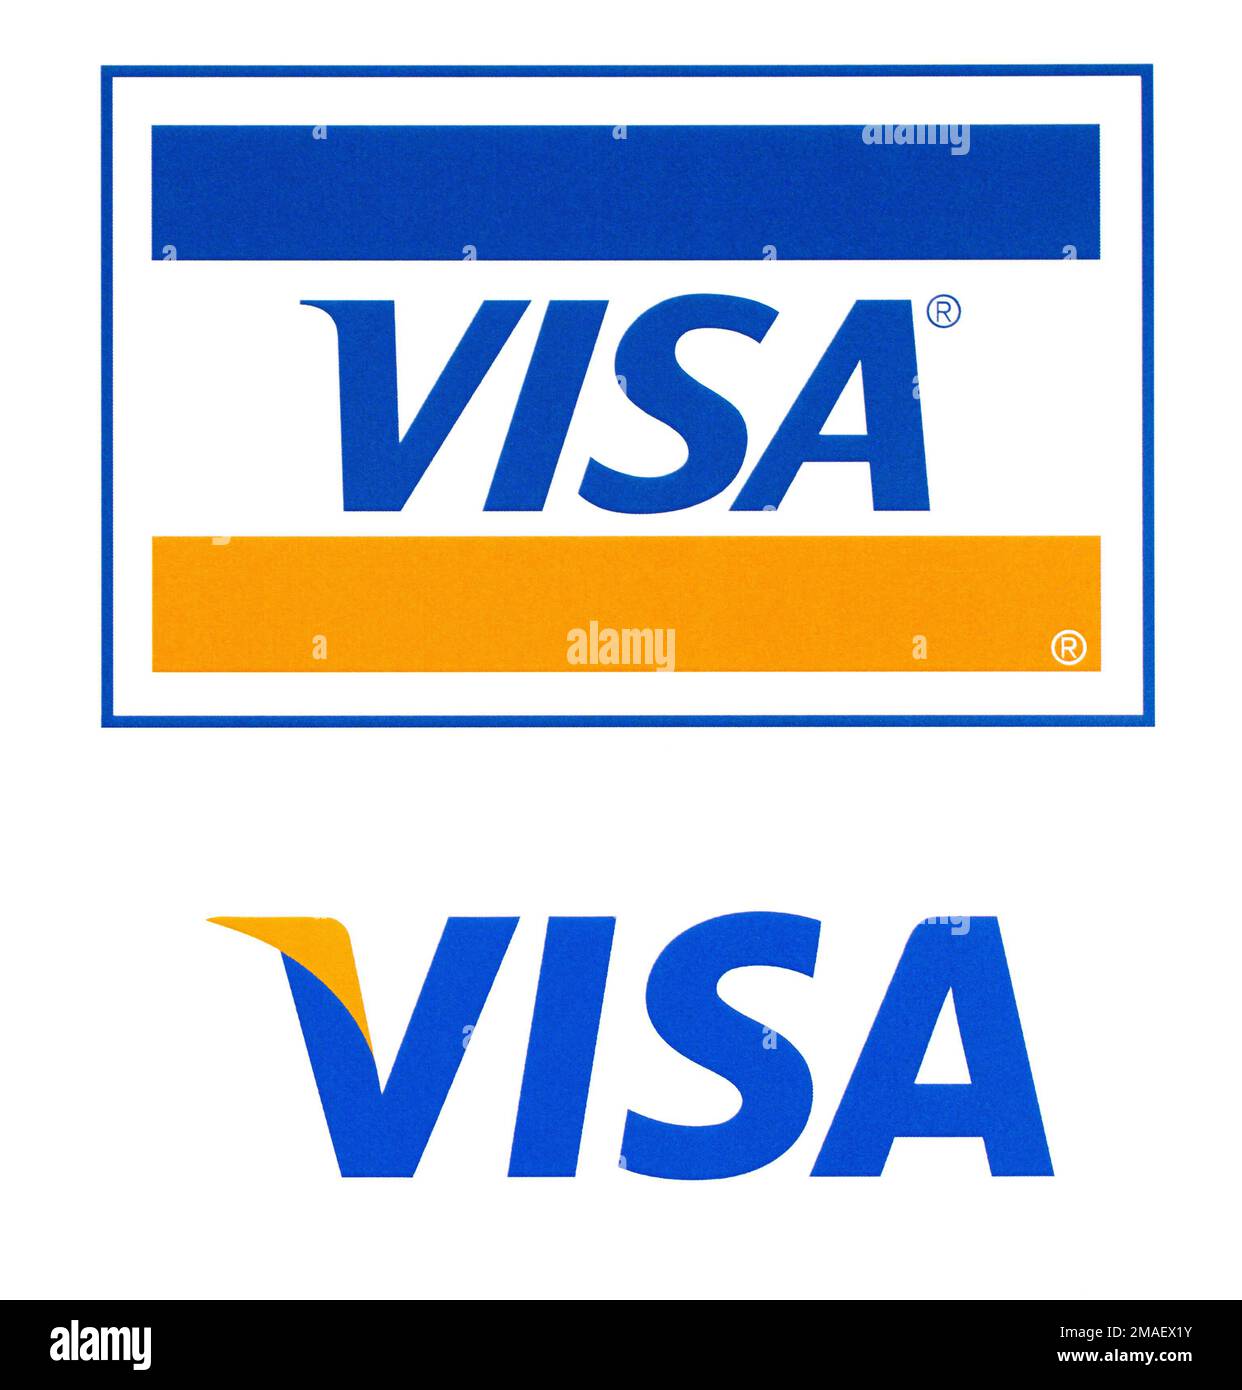 Chisinau, Moldawien - 19. September 2018: Visa-Logo auf dem Papier und auf weißem Hintergrund gedruckt.Visa - amerikanisches multinationales Unternehmen, das das Programm bereitstellt Stockfoto